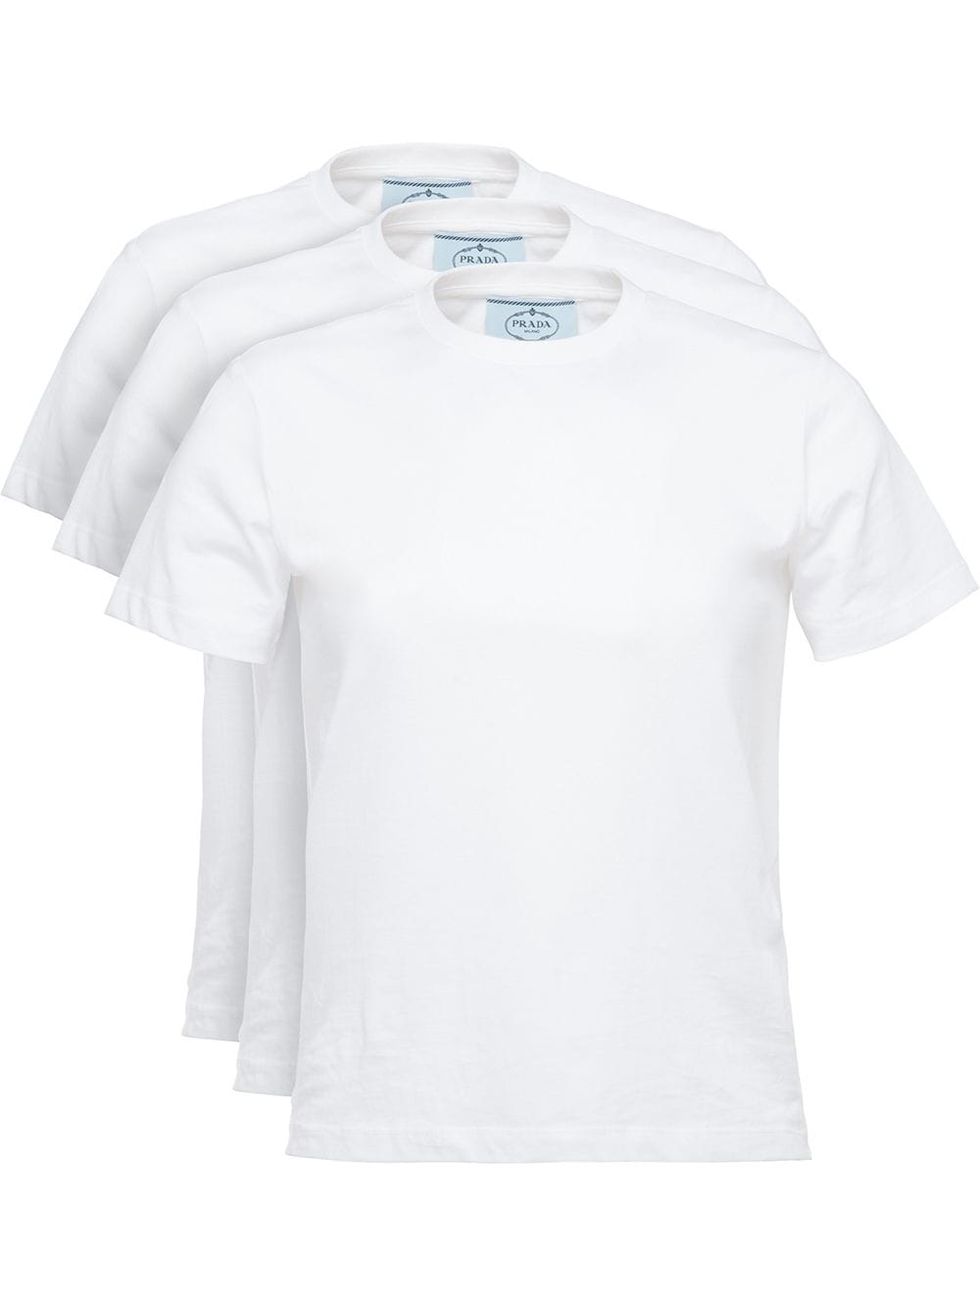 Pack de 3 camisetas blancas